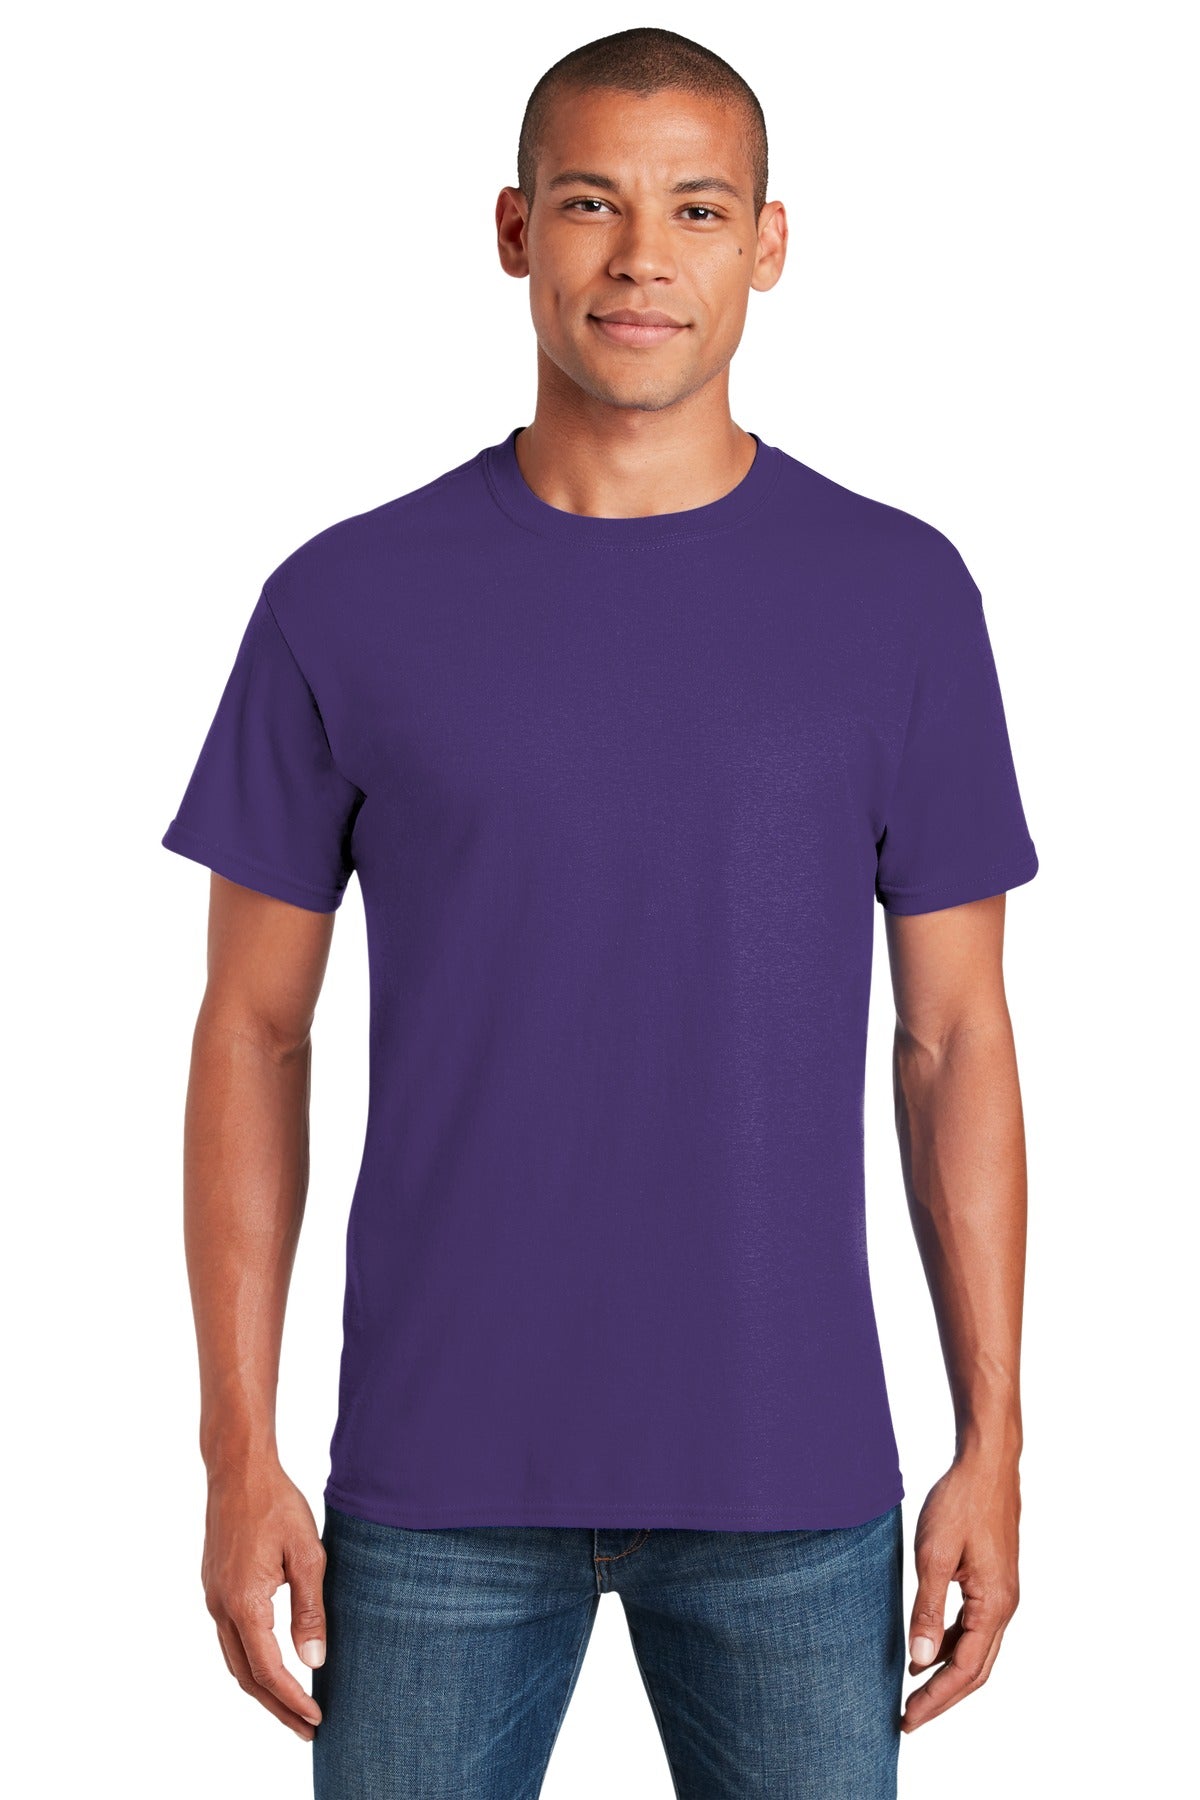 indtil nu Tomhed pumpe Gildan® - Heavy Cotton™ 100% Cotton T-Shirt. 5000 [Lilac] – DFW Impression